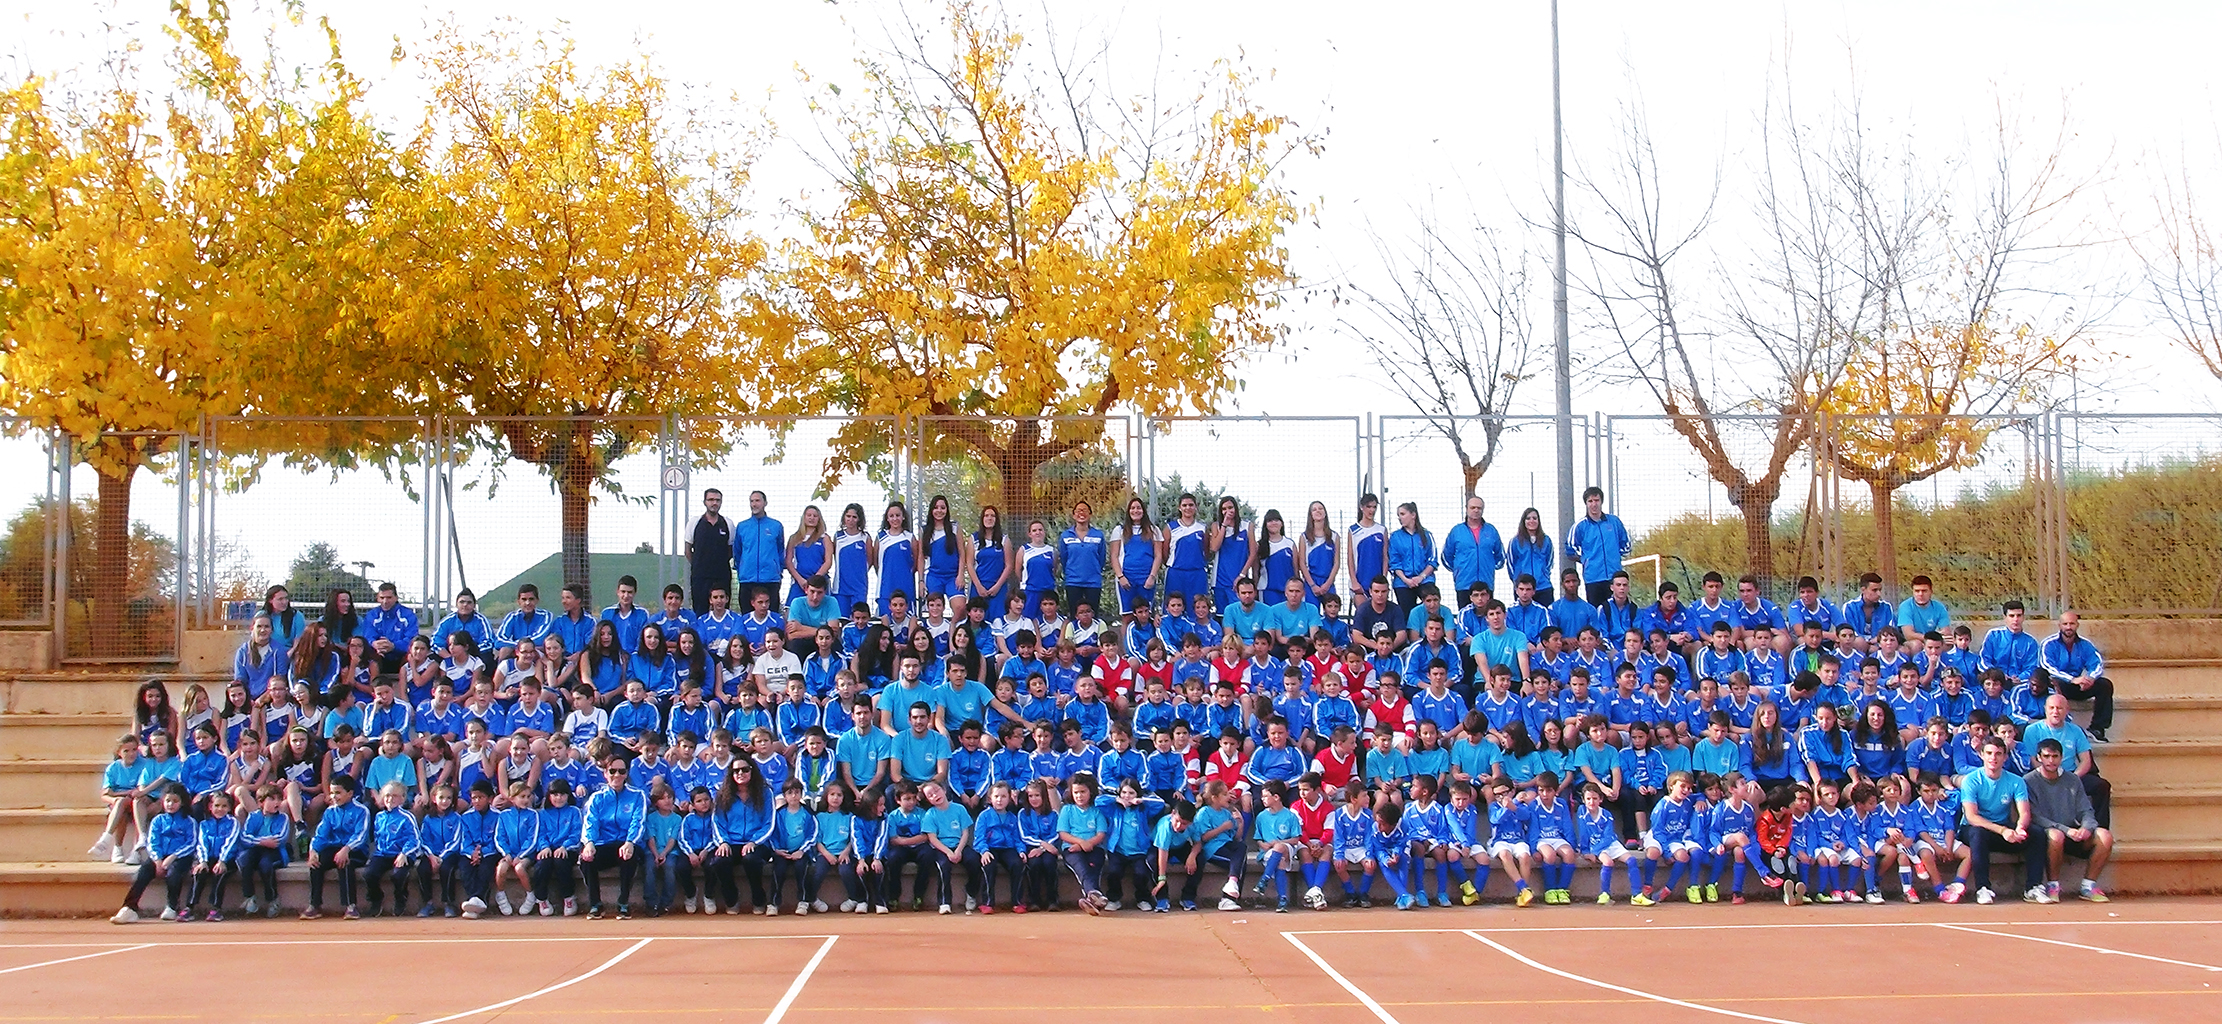  El Colegio San Agustín de Salamanca presenta los equipos deportivos para el curso escolar 2014/2015